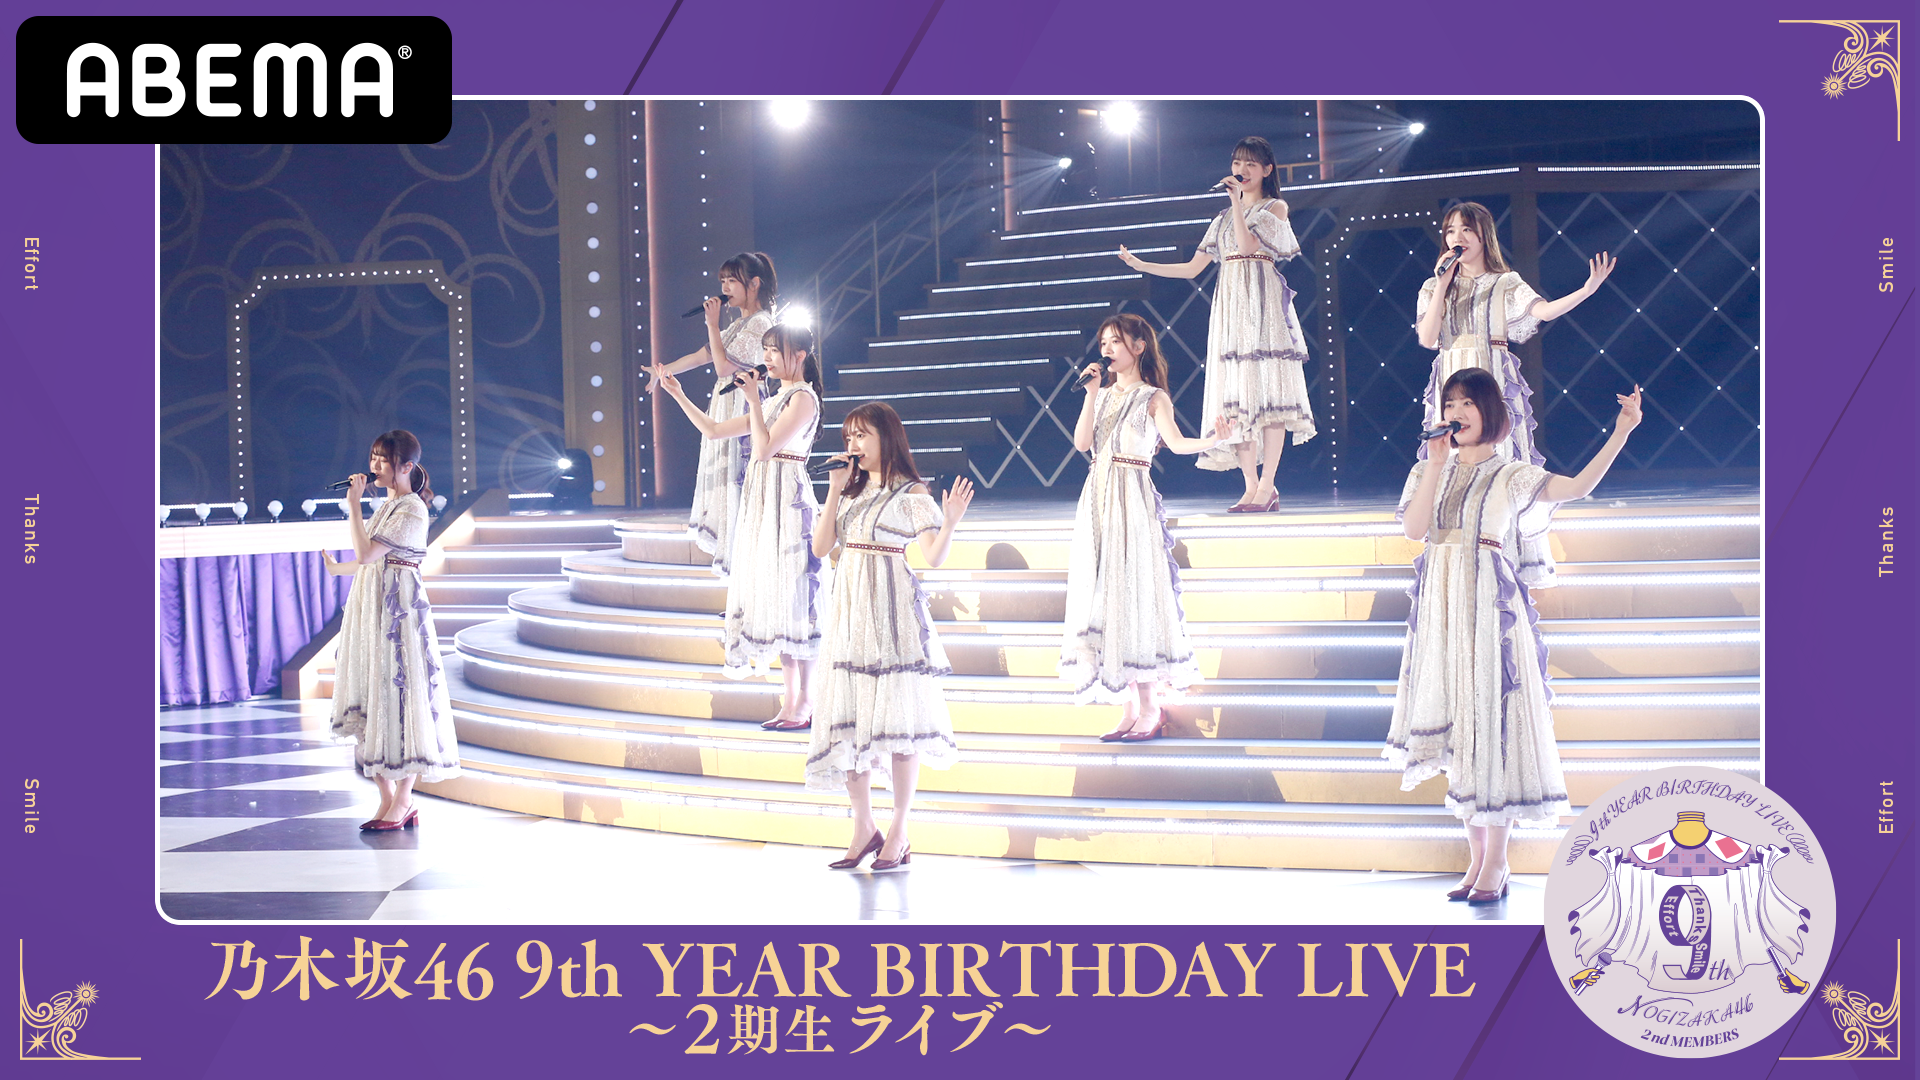 乃木坂46 9th YEAR BIRTHDAY LIVE 28日(日)〜2期生ライブ〜29日(月)〜1 